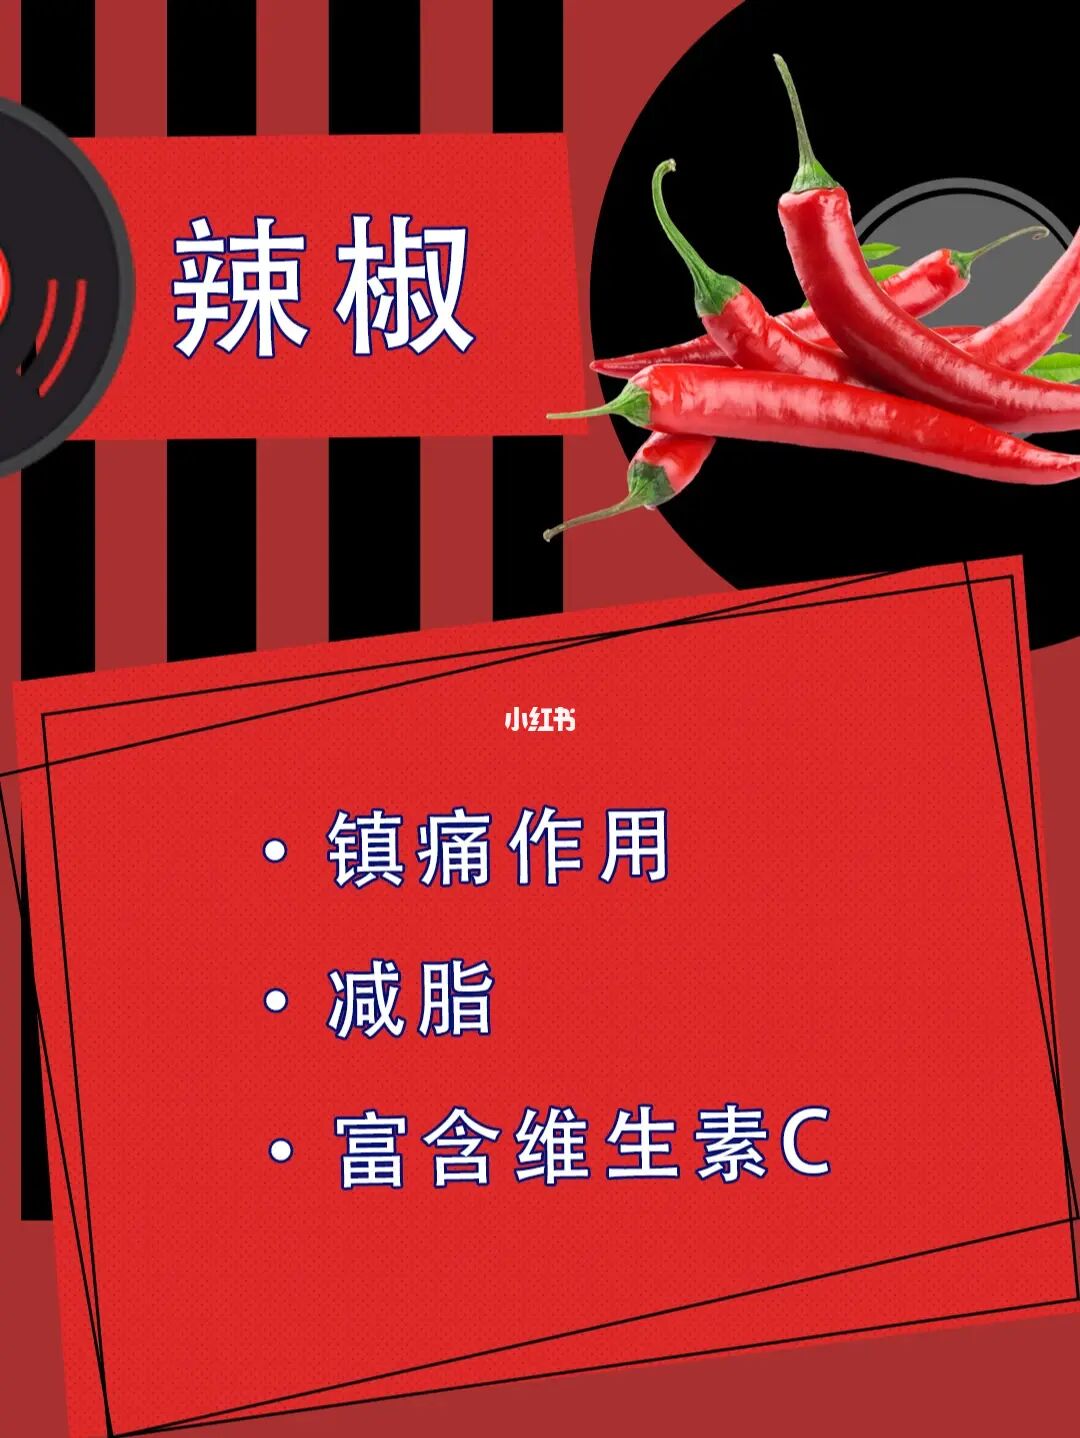 视频辣椒炒肉_视频辣椒怎么腌制好吃_辣椒视频